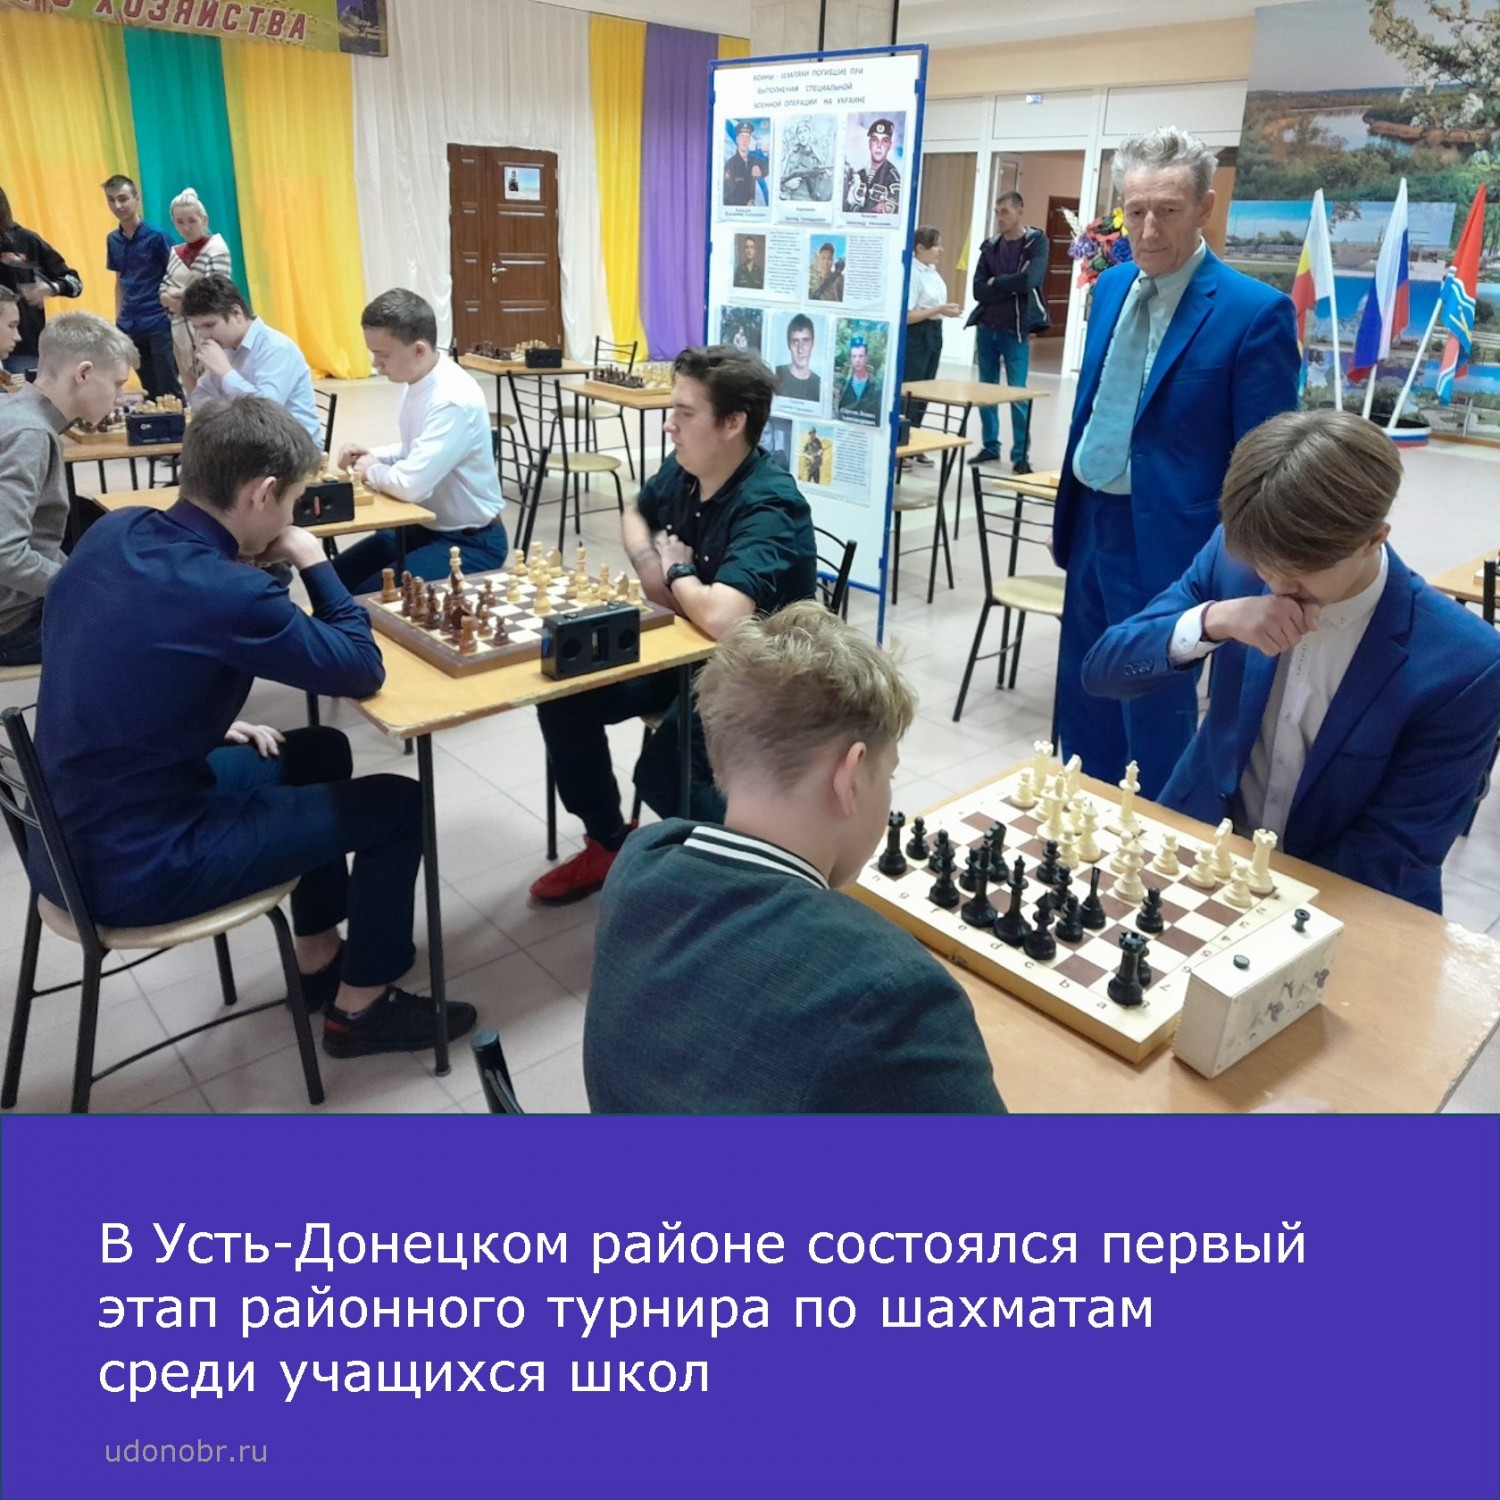 В Усть-Донецком районе состоялся первый этап районного турнира по шахматам среди учащихся школ